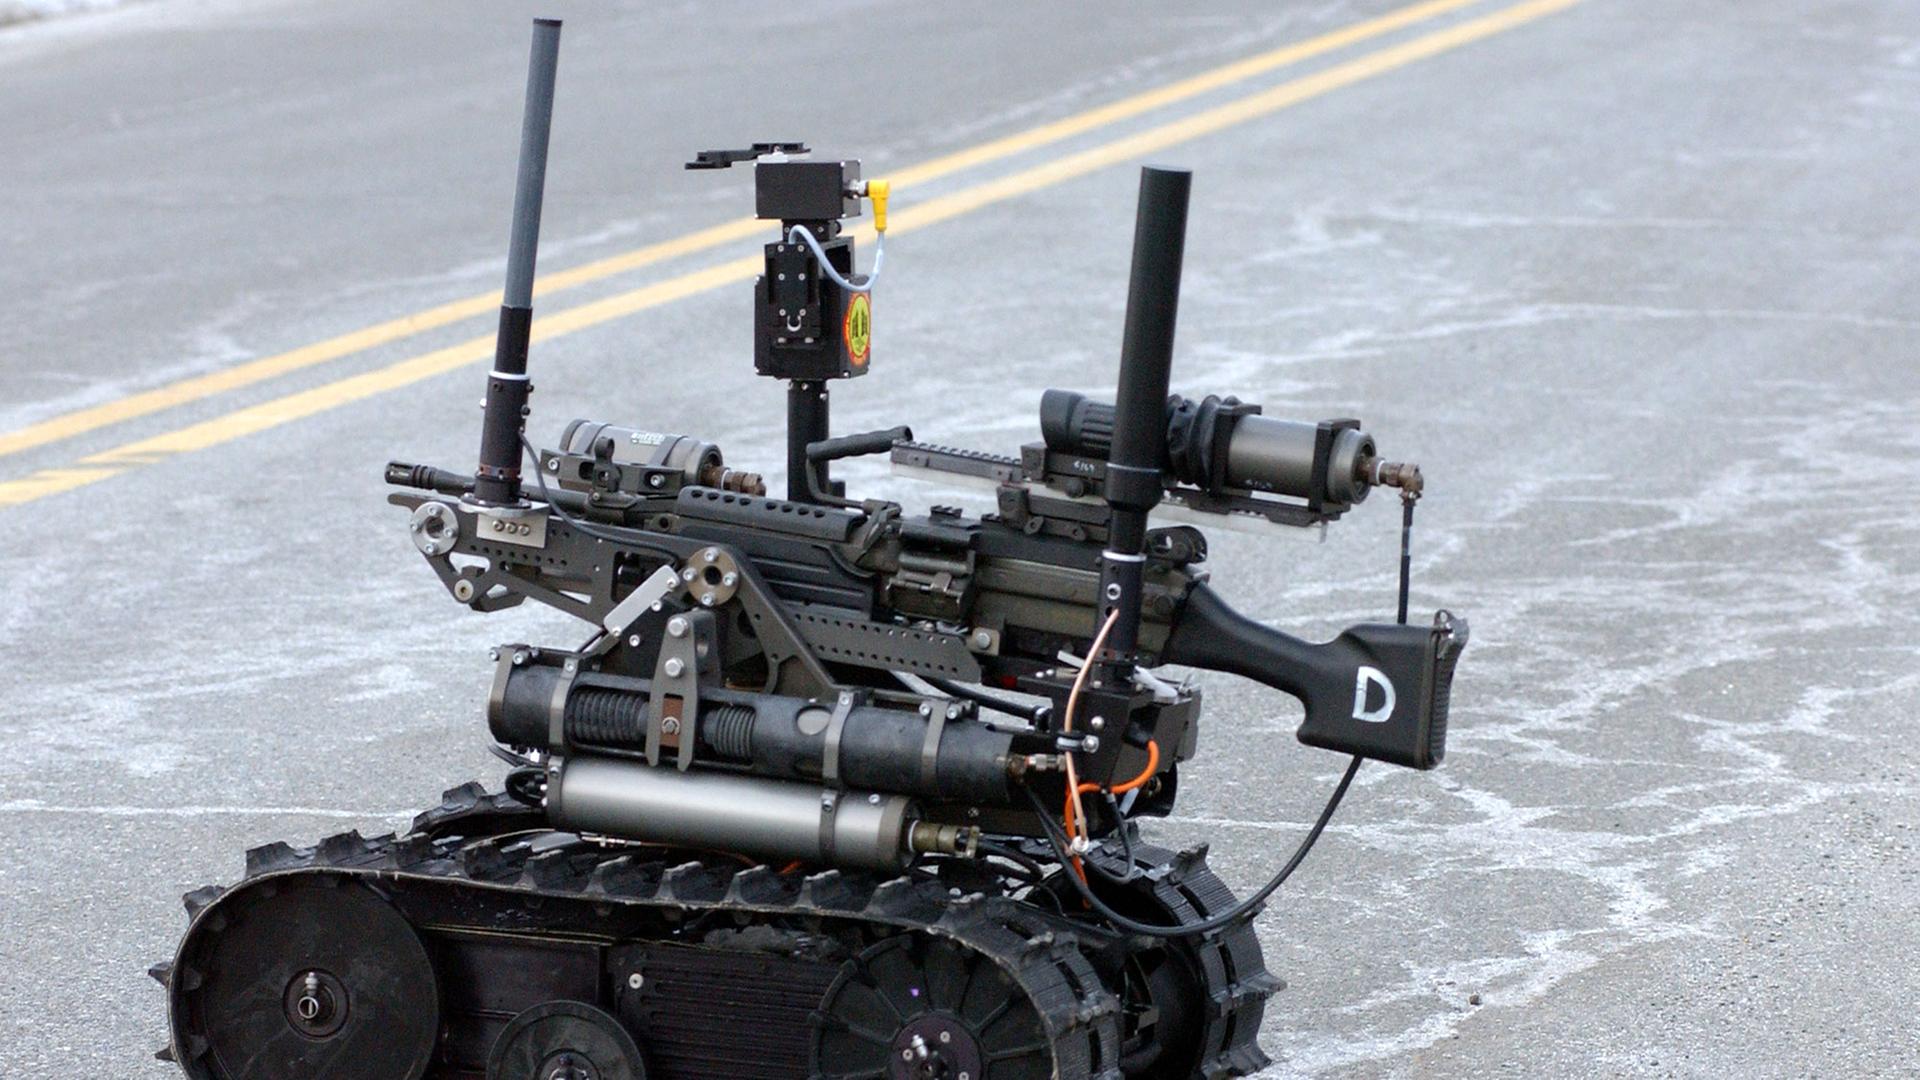 Der Kampfroboter "Talon Sword" der US-amerikanischen Armee wird auf einer Pressekonferenz vorgestellt.